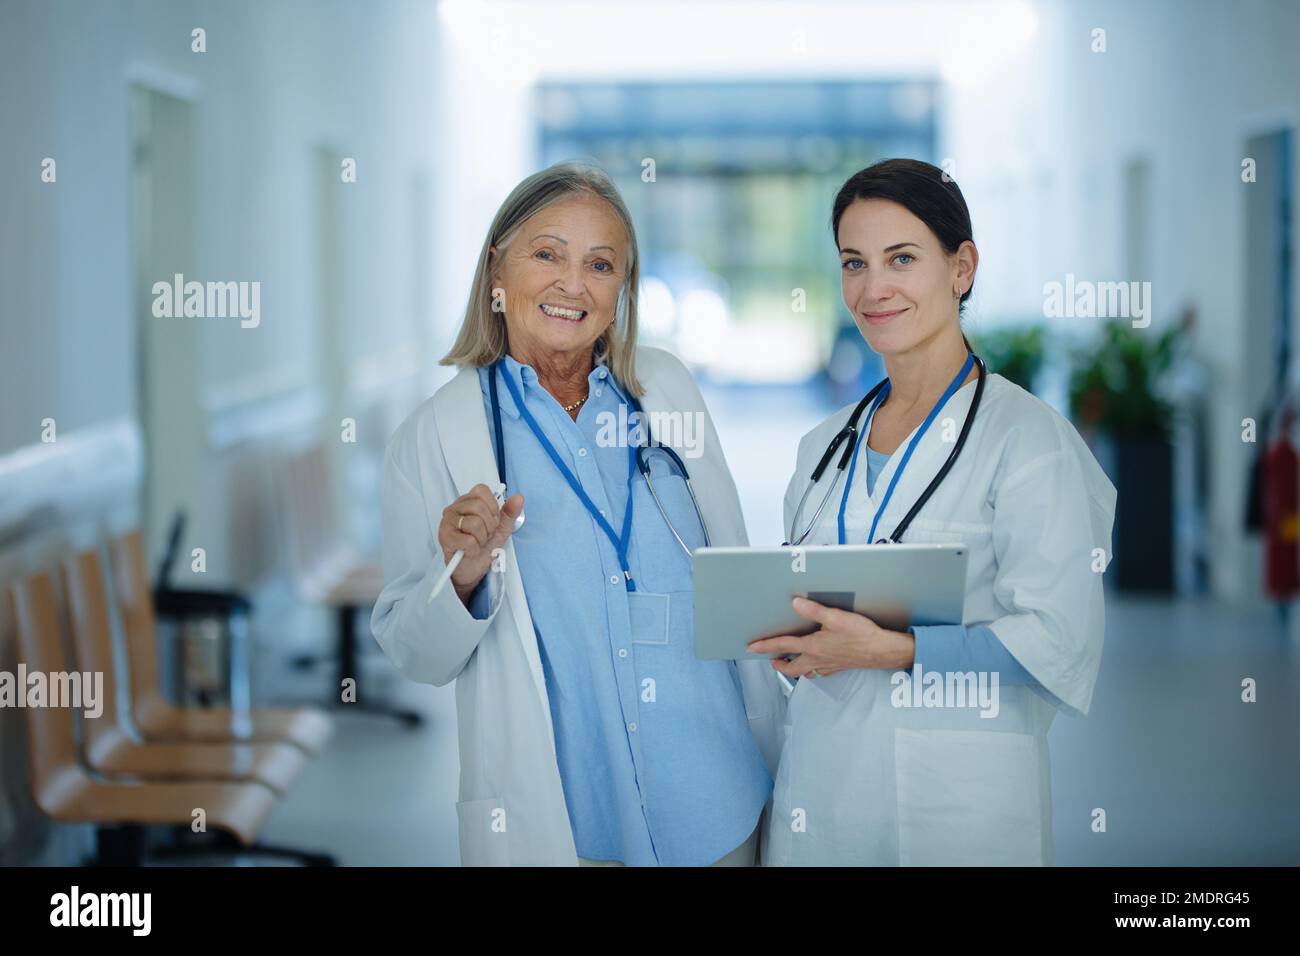 Femme plus âgée médecin donnant des conseils à son jeune collègue, discutant dans le couloir de l'hôpital. Concept de soins de santé. Banque D'Images